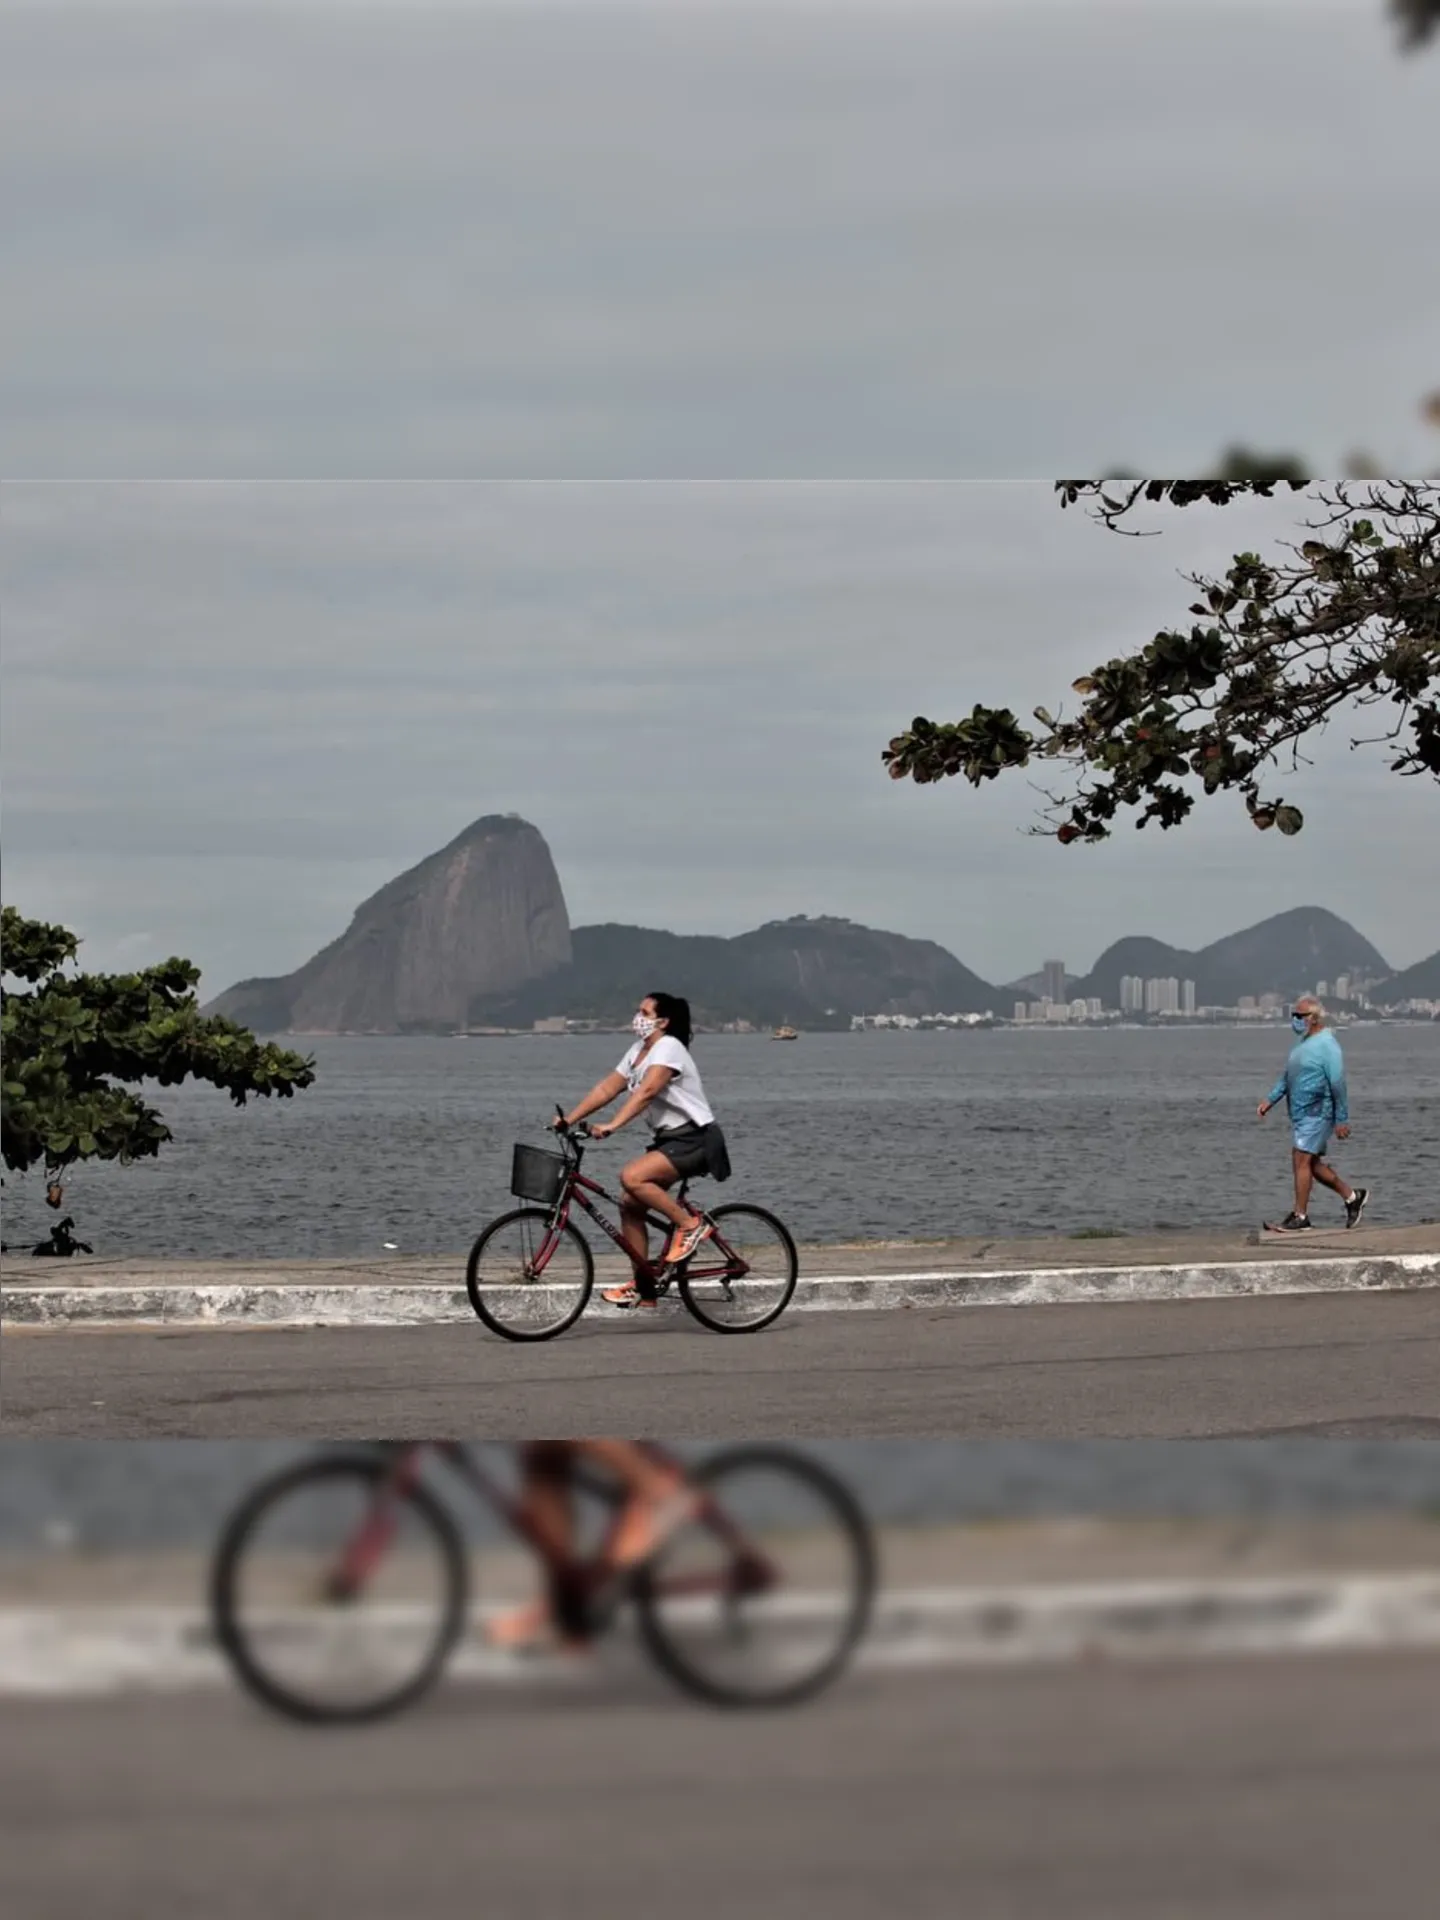 A Orla de Boa Viagem, na Zona Sul de Niterói, será fechada ao tráfego de veículos a partir do dia 4.